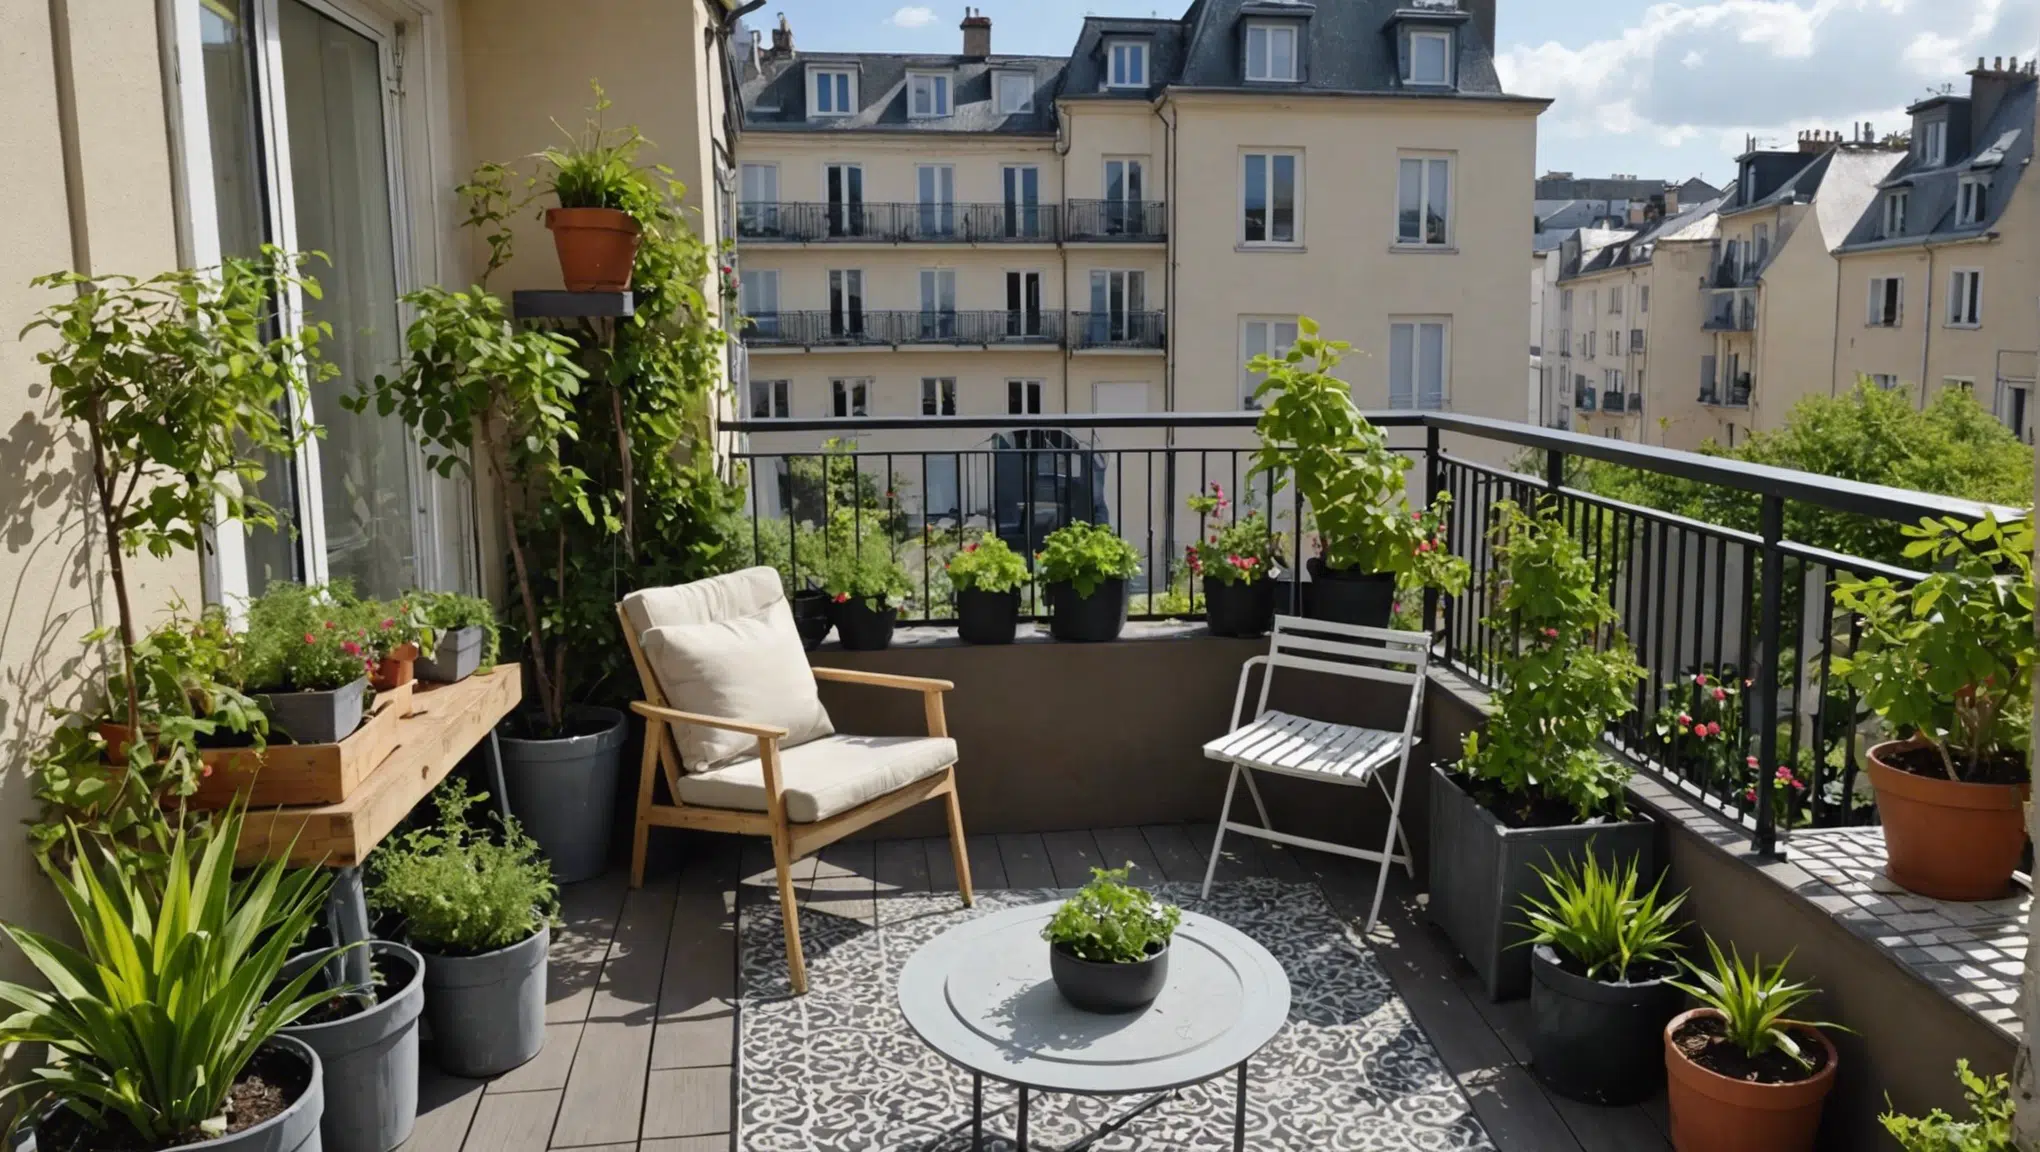 découvrez nos astuces pour transformer votre petit balcon en un paradis de jardinage urbain et profiter de la nature en milieu urbain.